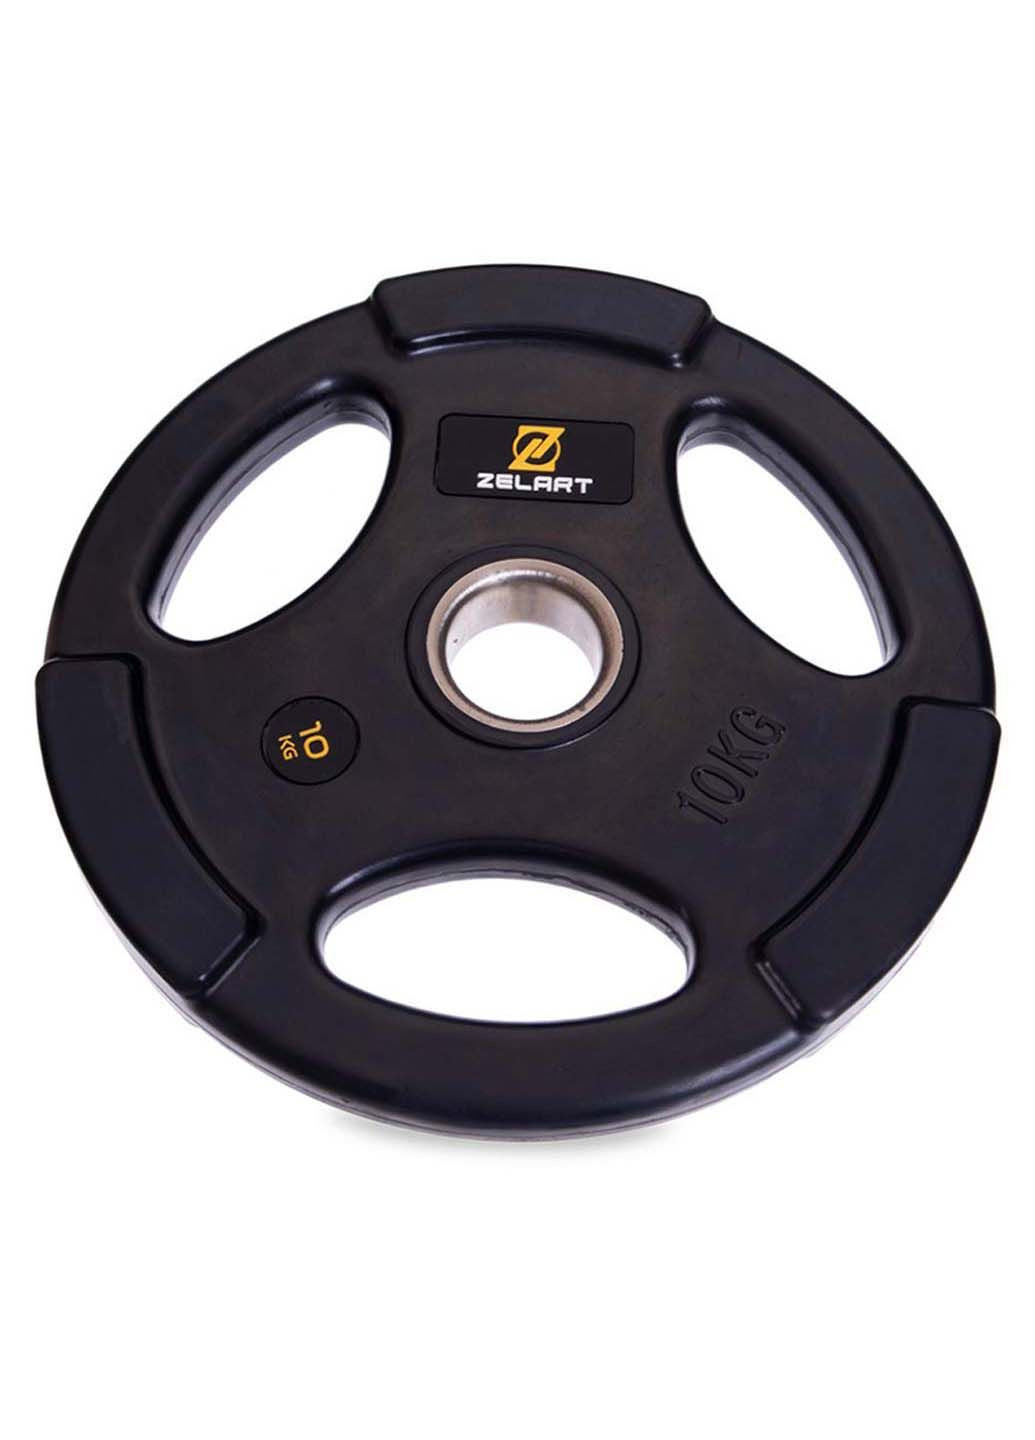 Млинці диски гумові TA-2673 10 кг Zelart (286043452)